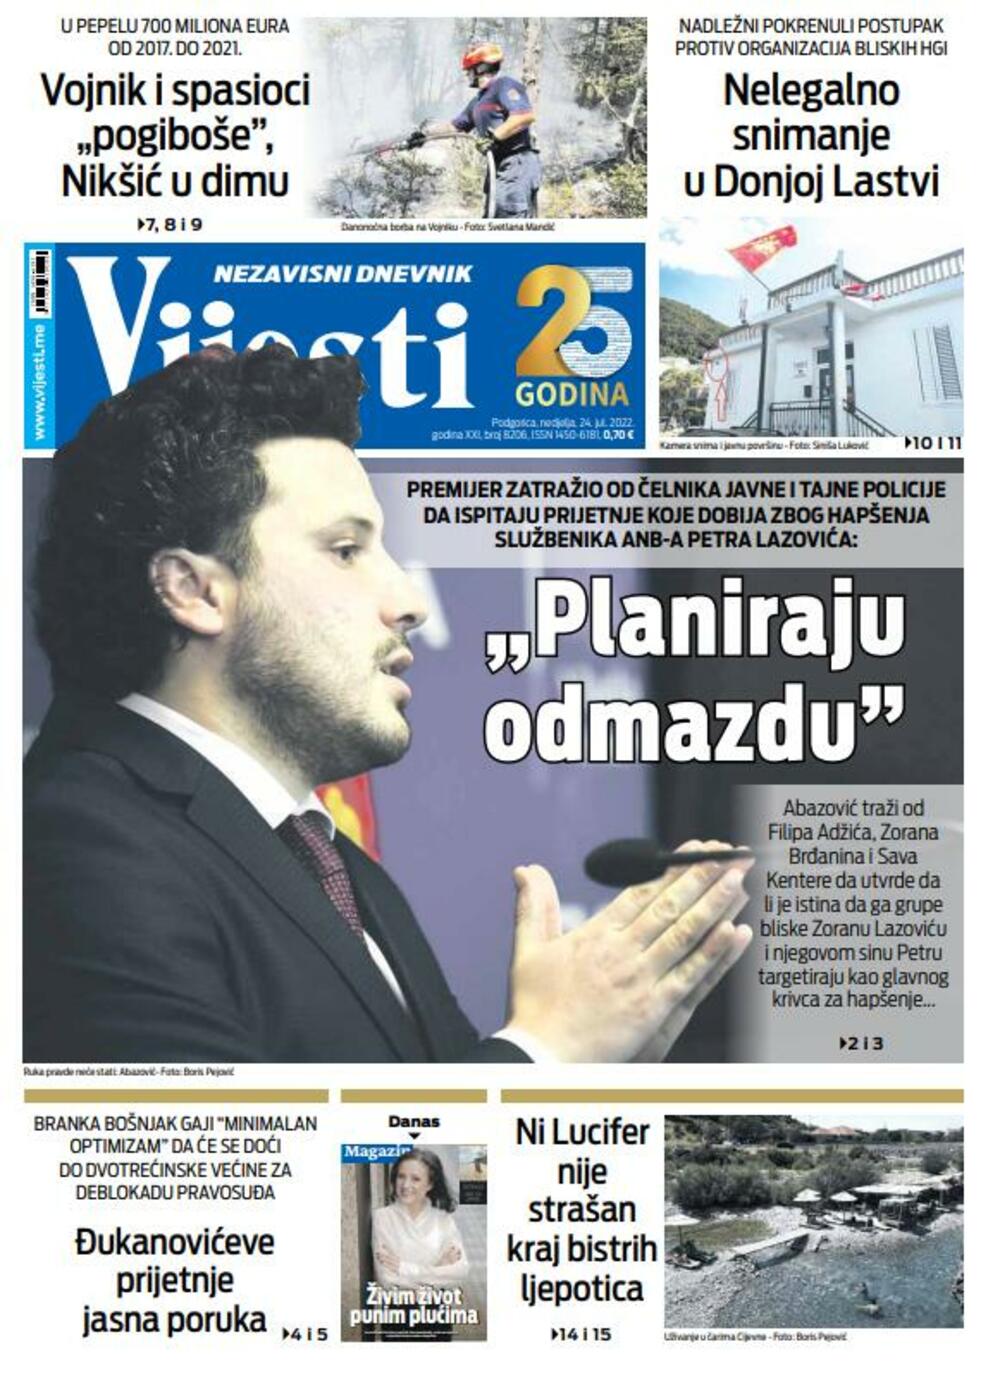 Naslovna strana "Vijesti" za nedjelju 24. jul 2022., Foto: Vijesti